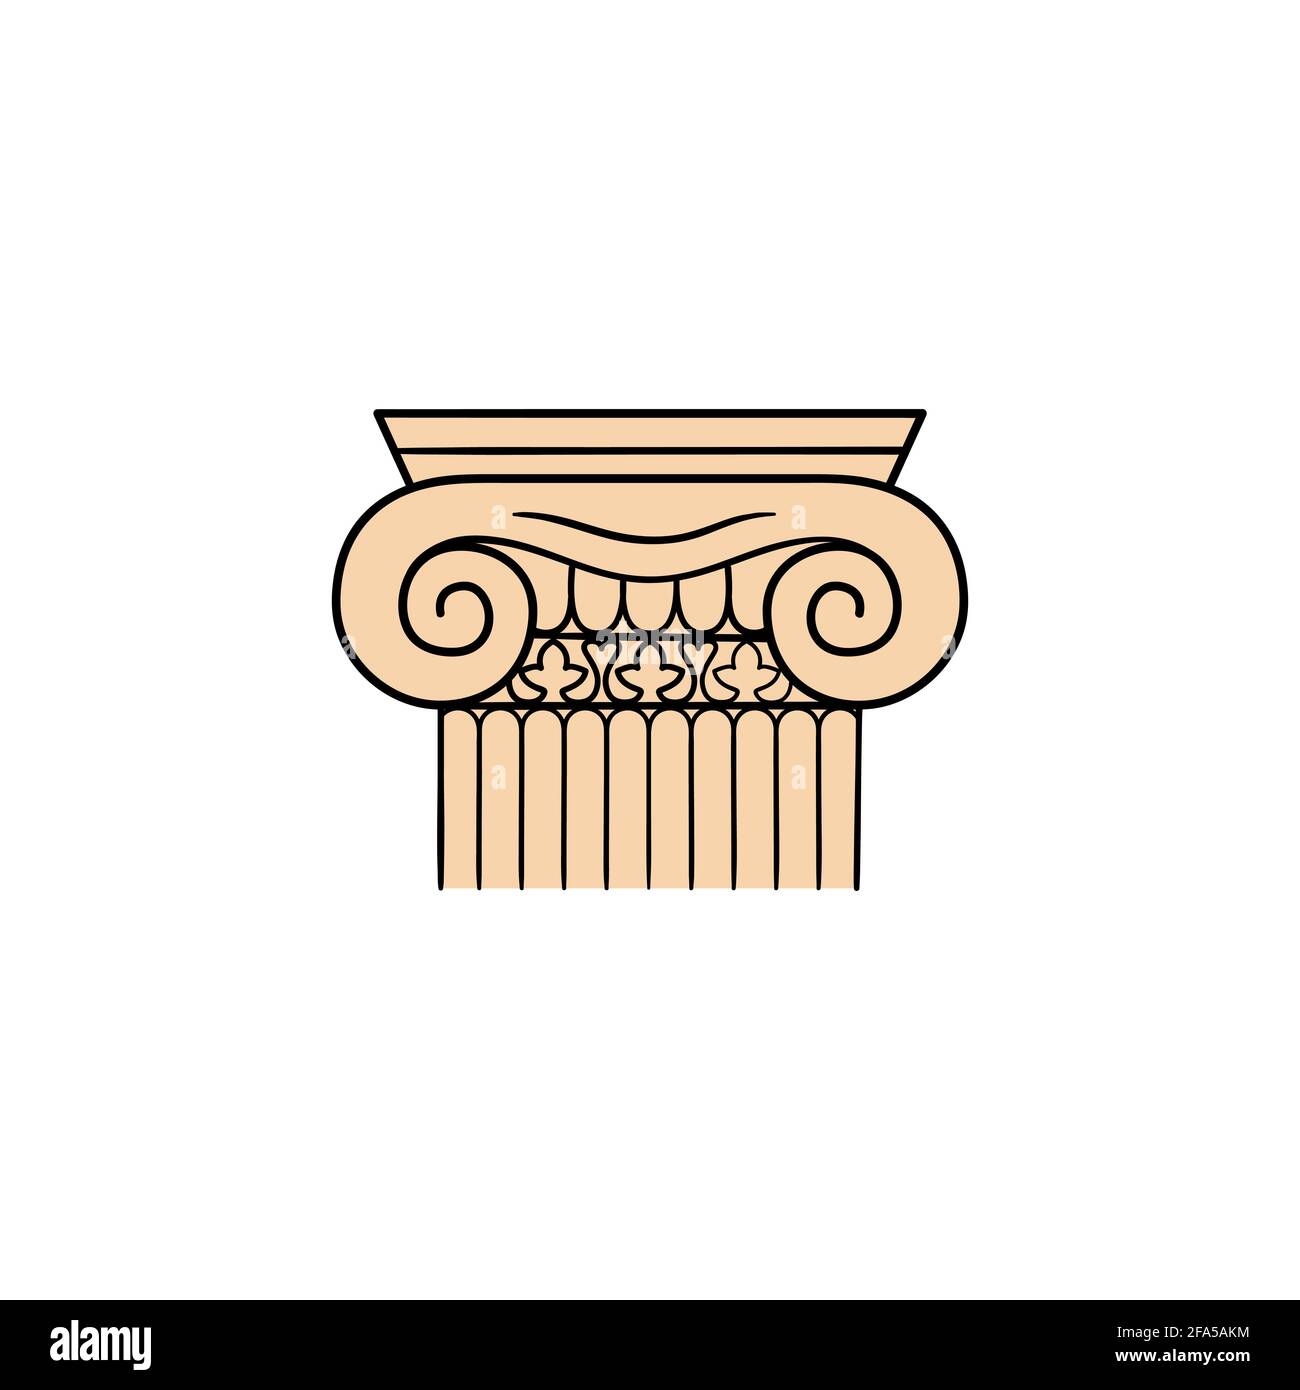 Ancienne colonne de marbre avec capital, dessin à la main objet vectoriel isolé sur fond blanc. Objet antique grec d'architecture Illustration de Vecteur